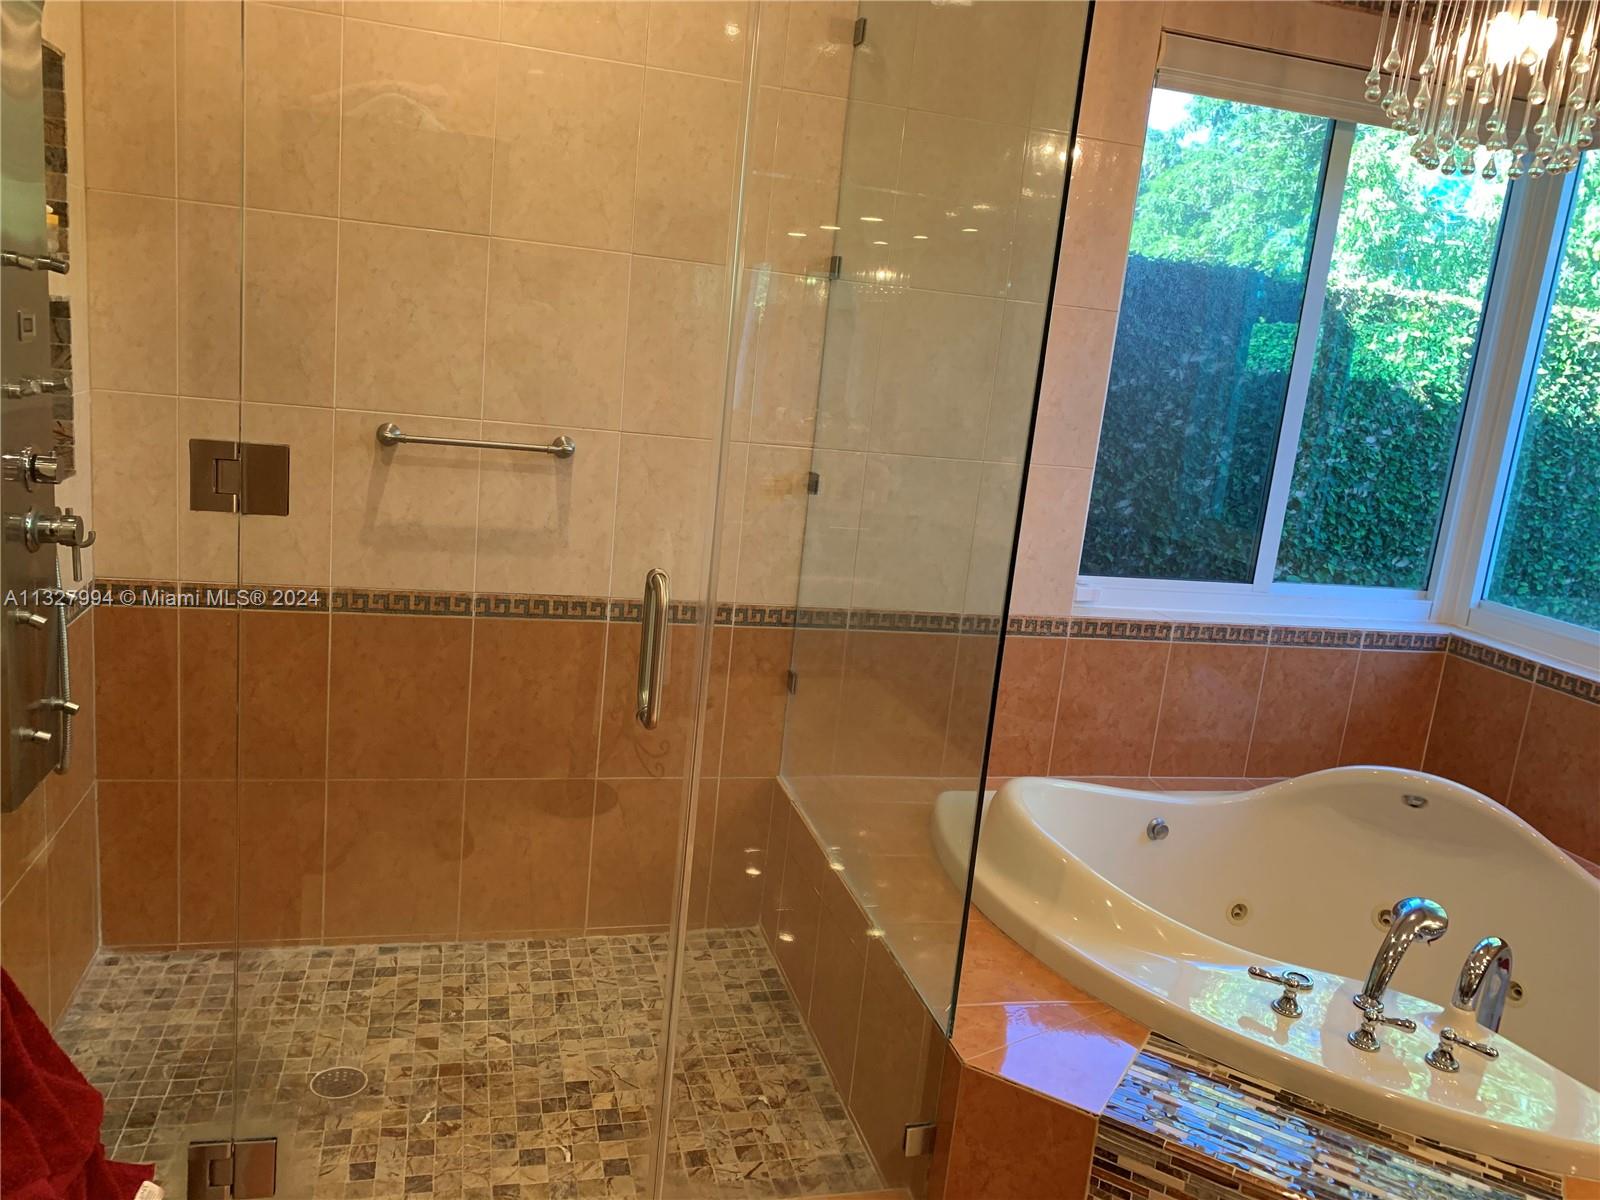 Owner's Suite Bathroom Shower/Spa